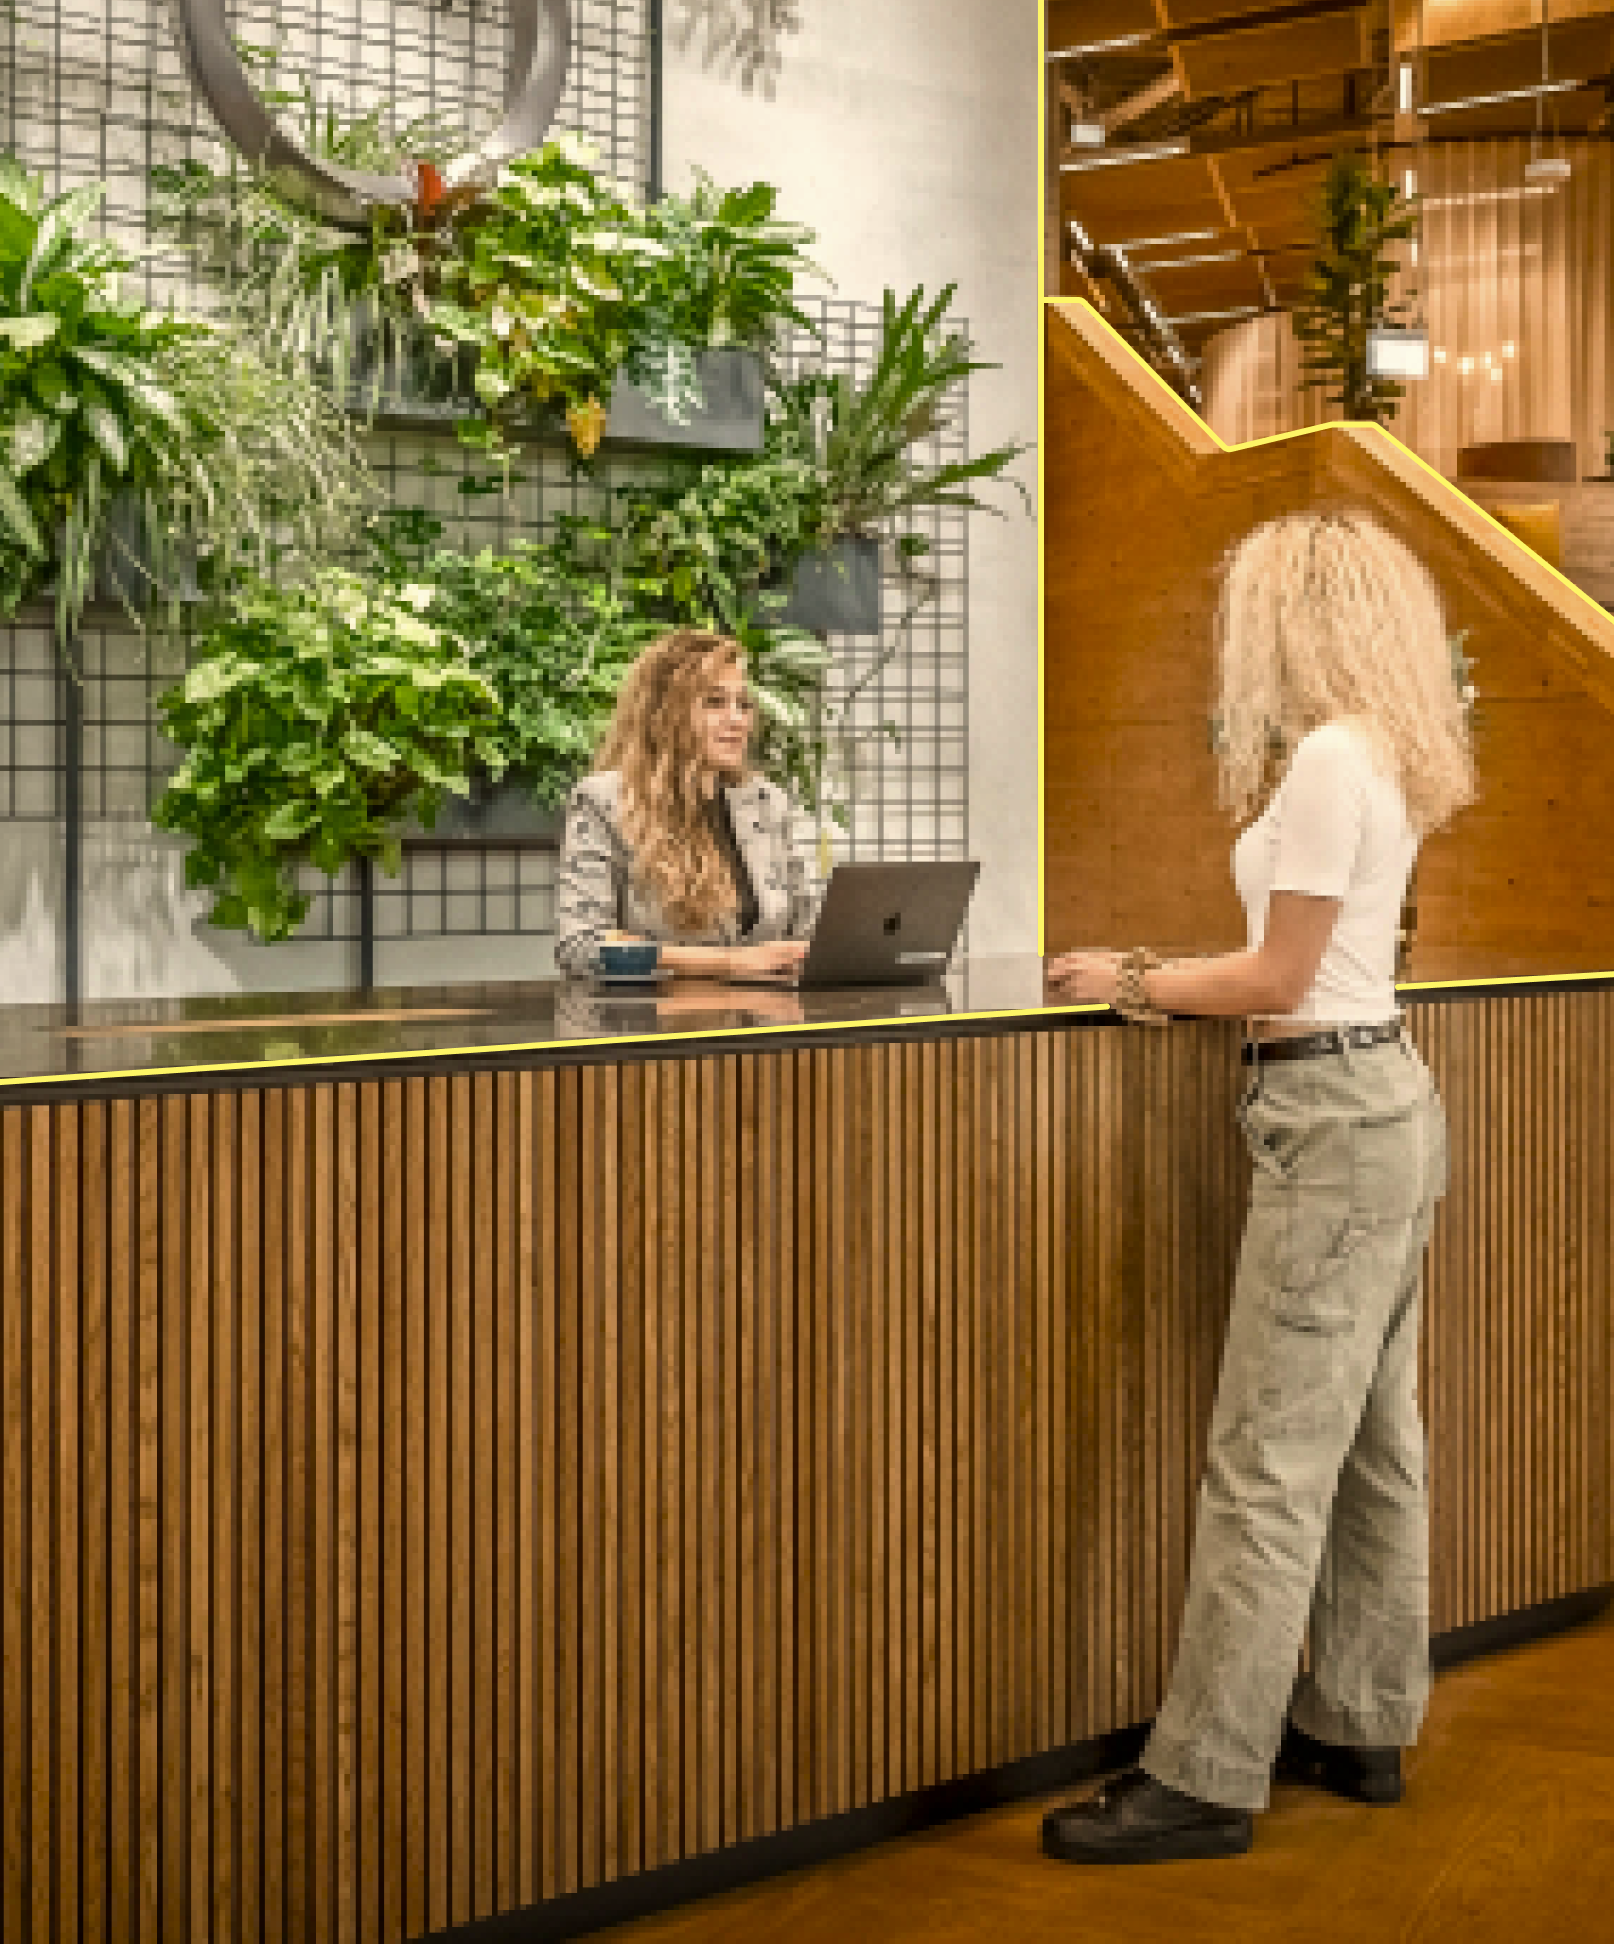 Zwei Frauen stehen am Empfang von einem schönen, moderner Bürogebäude mit viel Raum und vielen Pflanzen